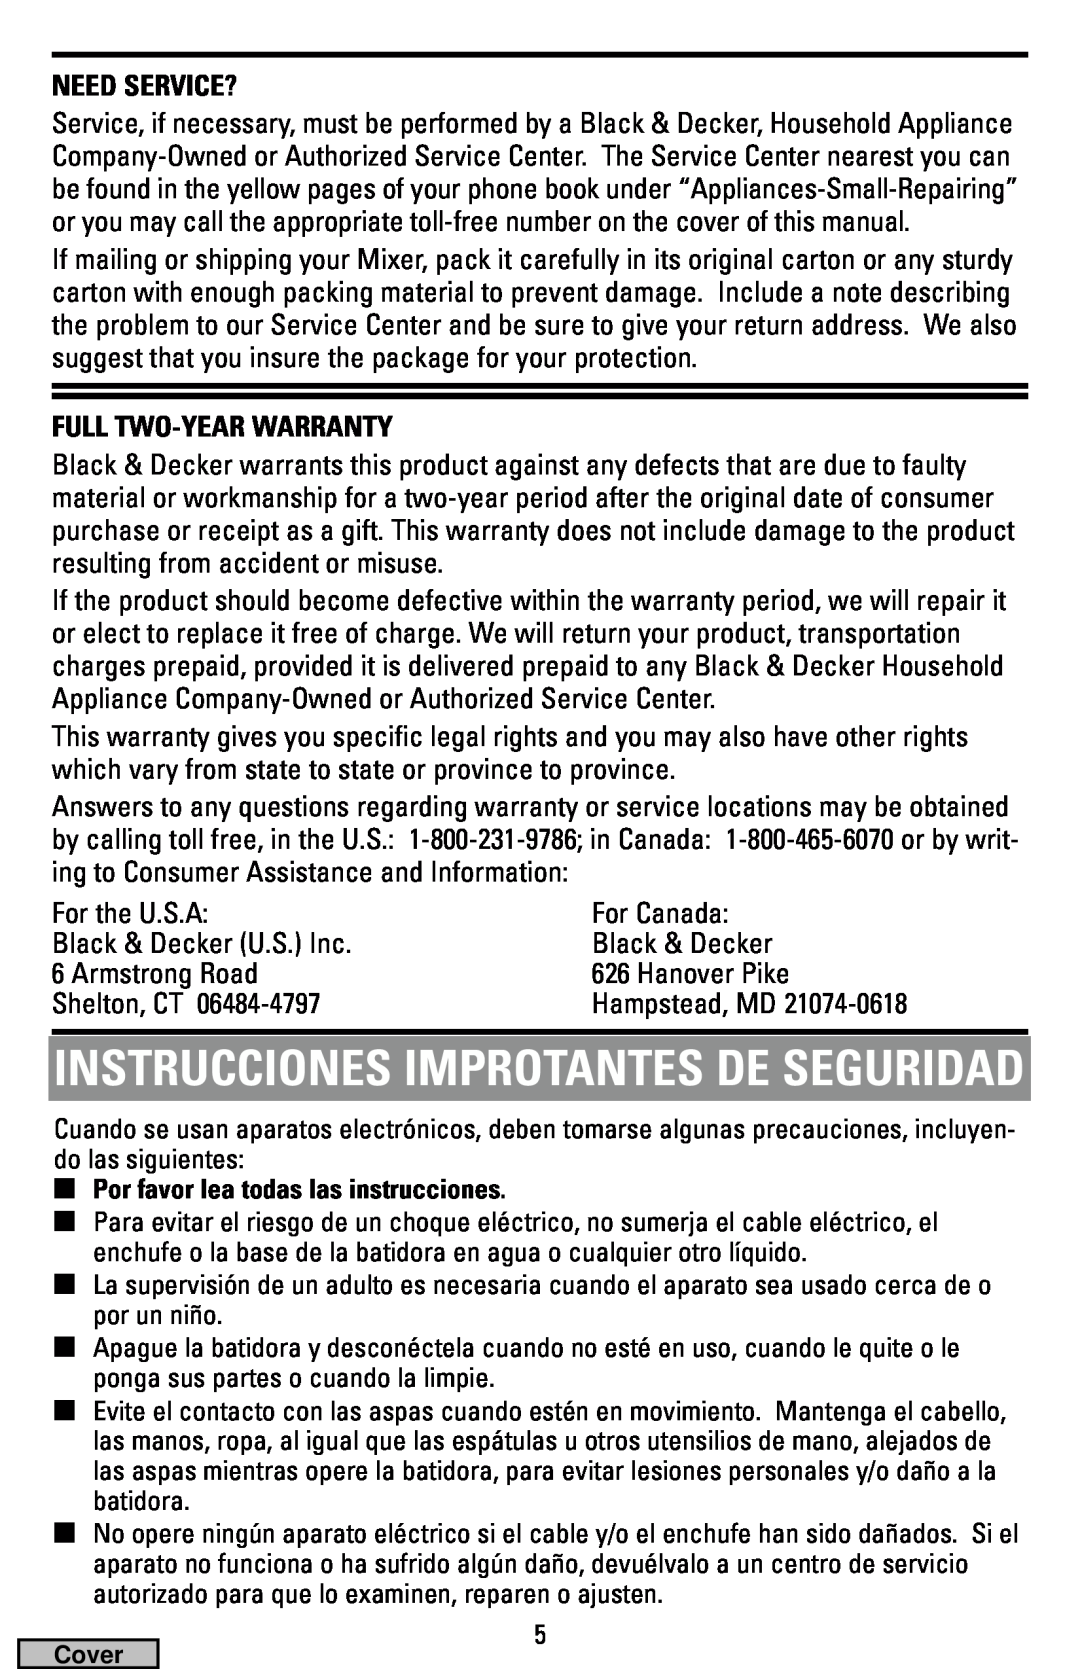 Black & Decker MX40 manual Instrucciones Improtantes De Seguridad, Need Service?, Full Two-Year Warranty 